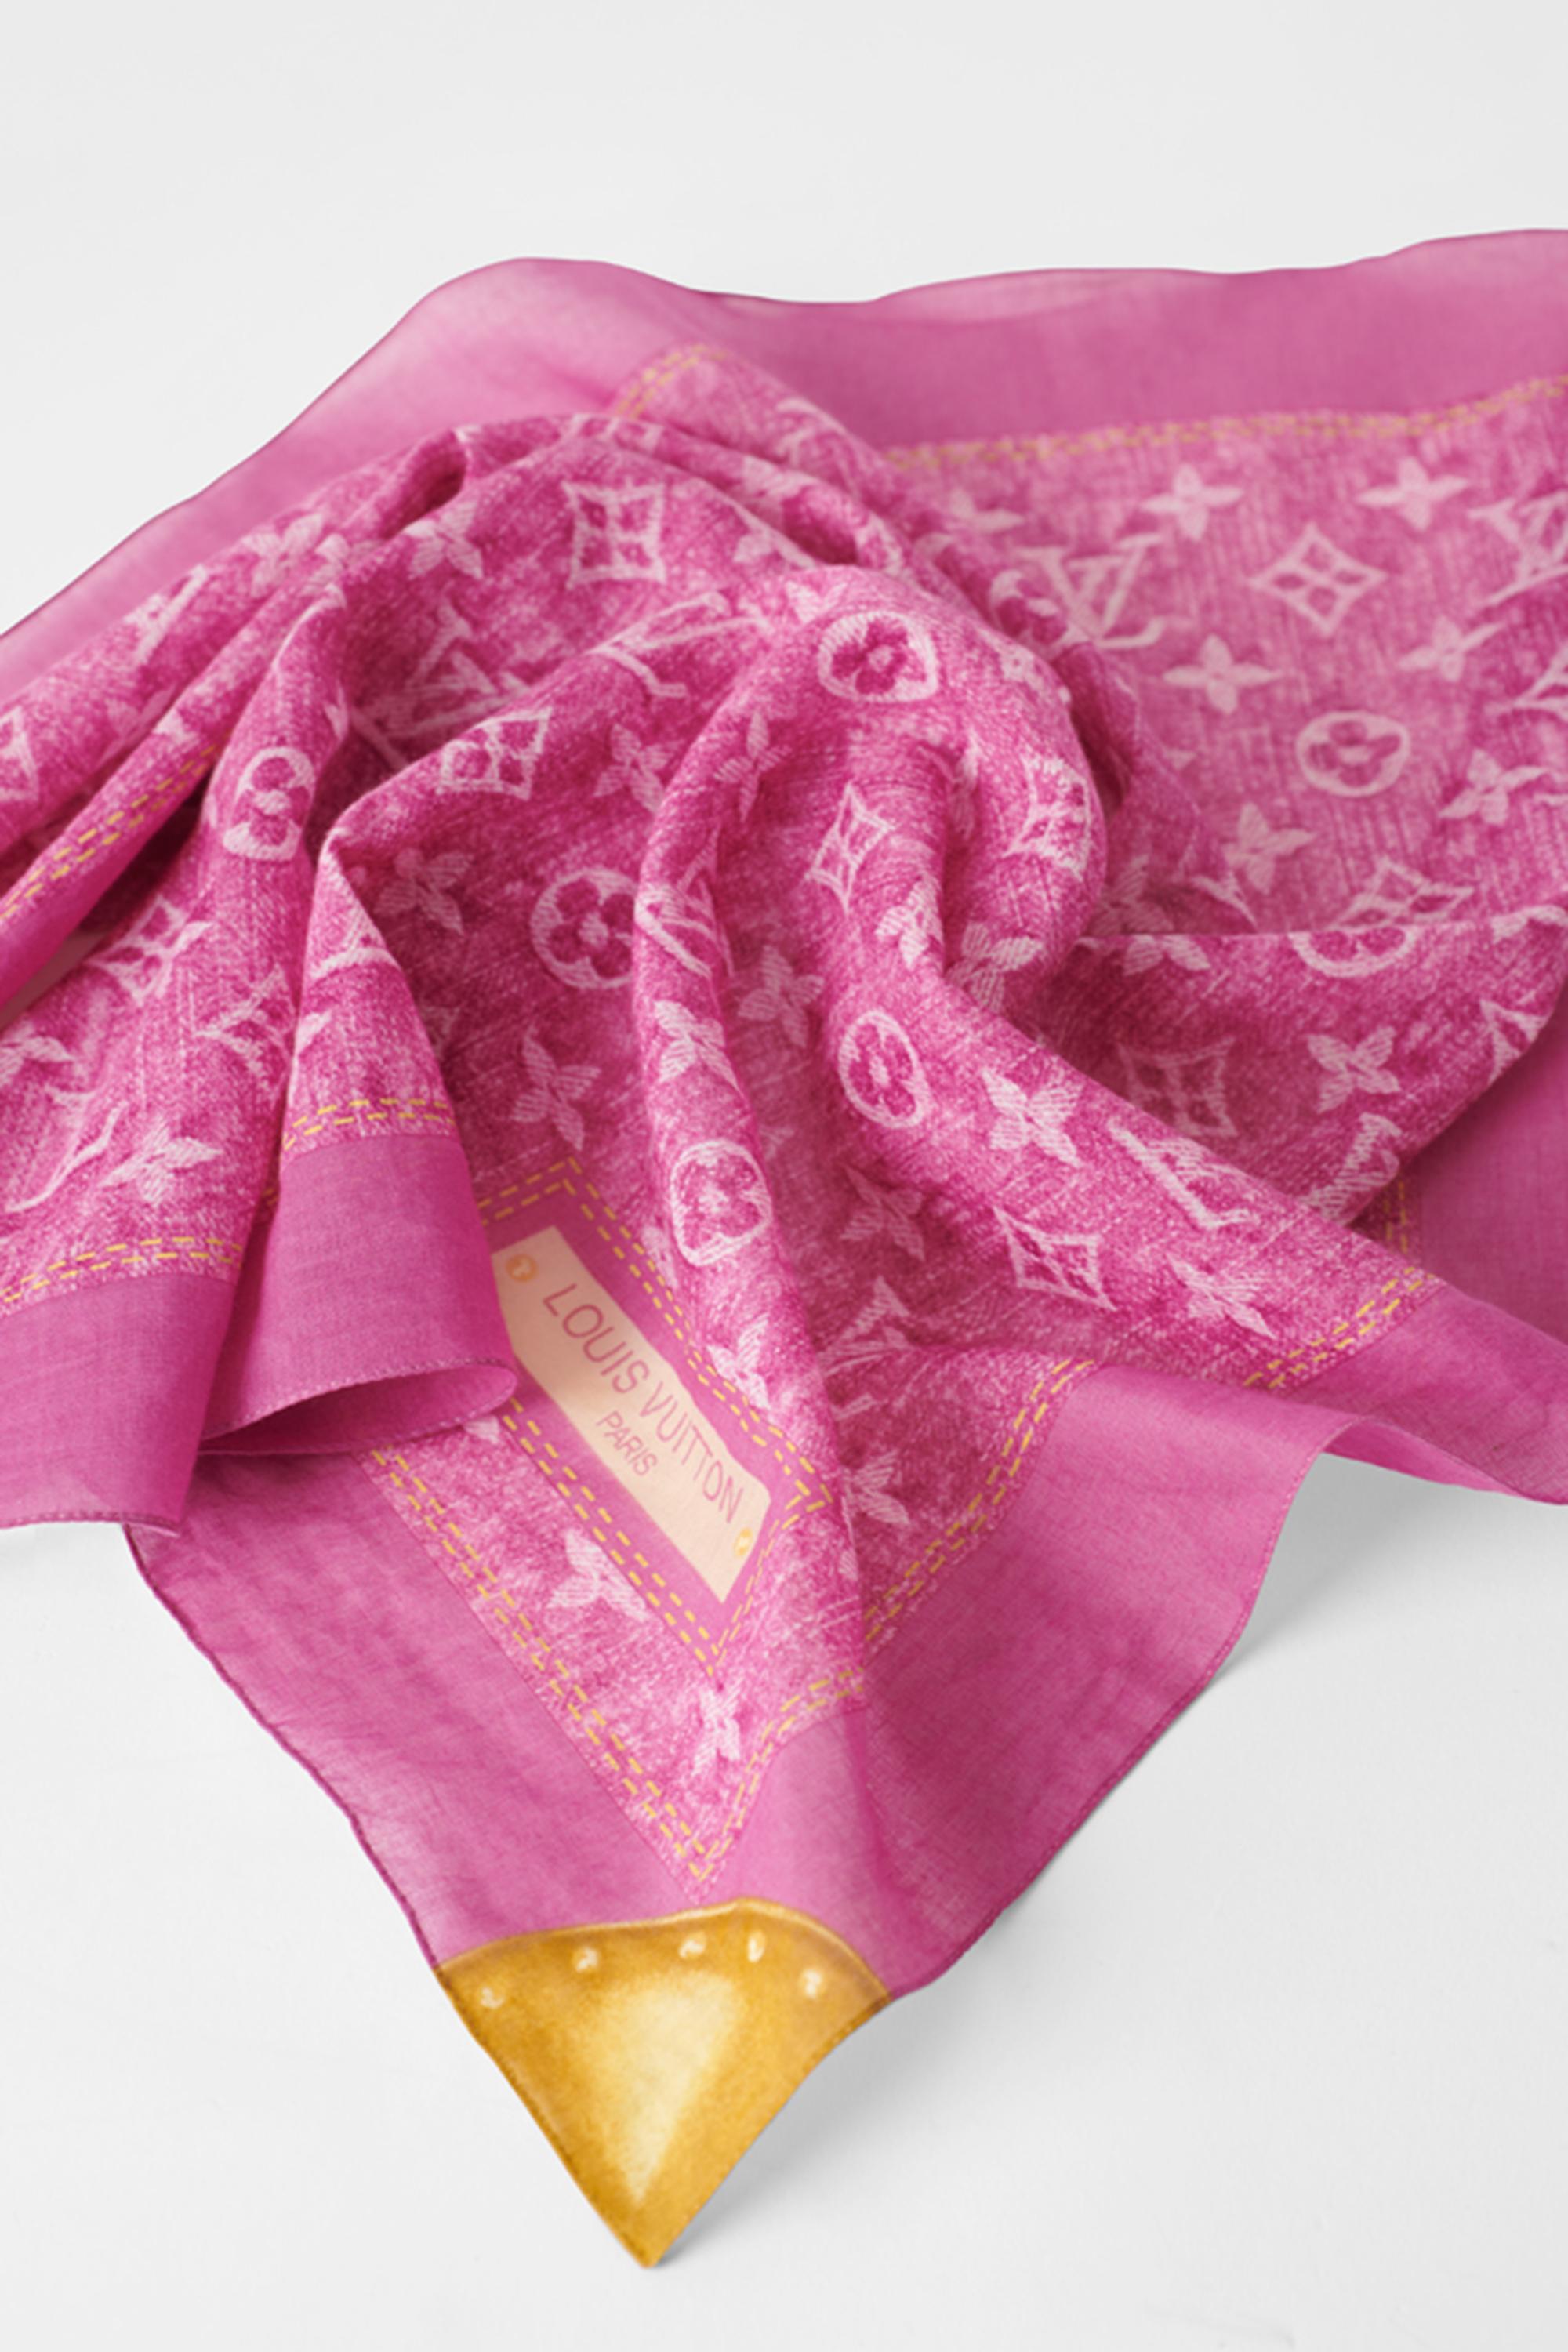 Louis Vuitton 2006 Pink Denim Monogram Speedy Bag & Scarf For Sale 5